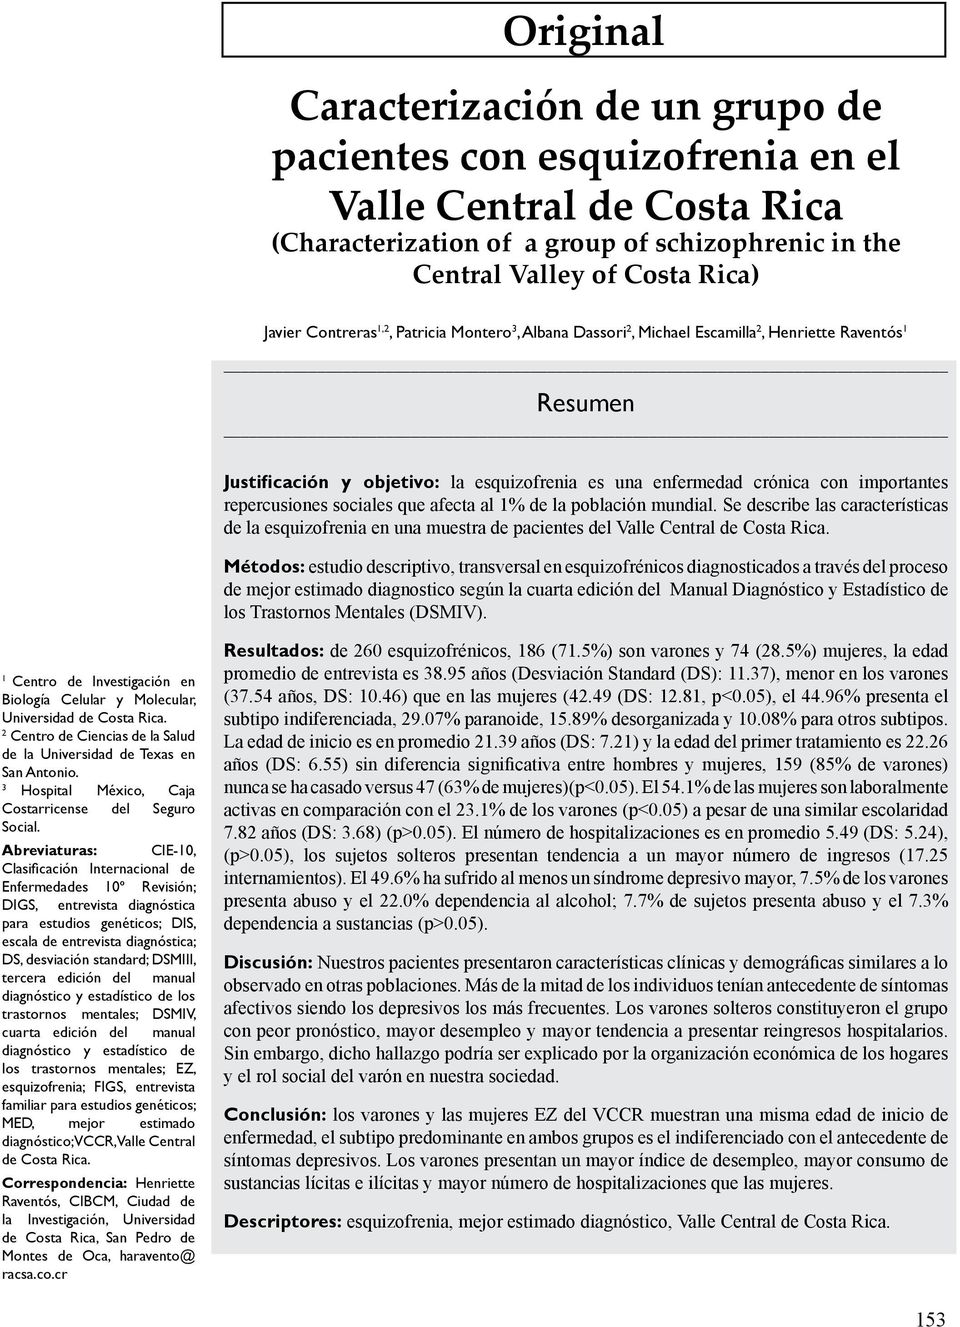 repercusiones sociales que afecta al 1% de la población mundial. Se describe las características de la esquizofrenia en una muestra de pacientes del Valle Central de Costa Rica.